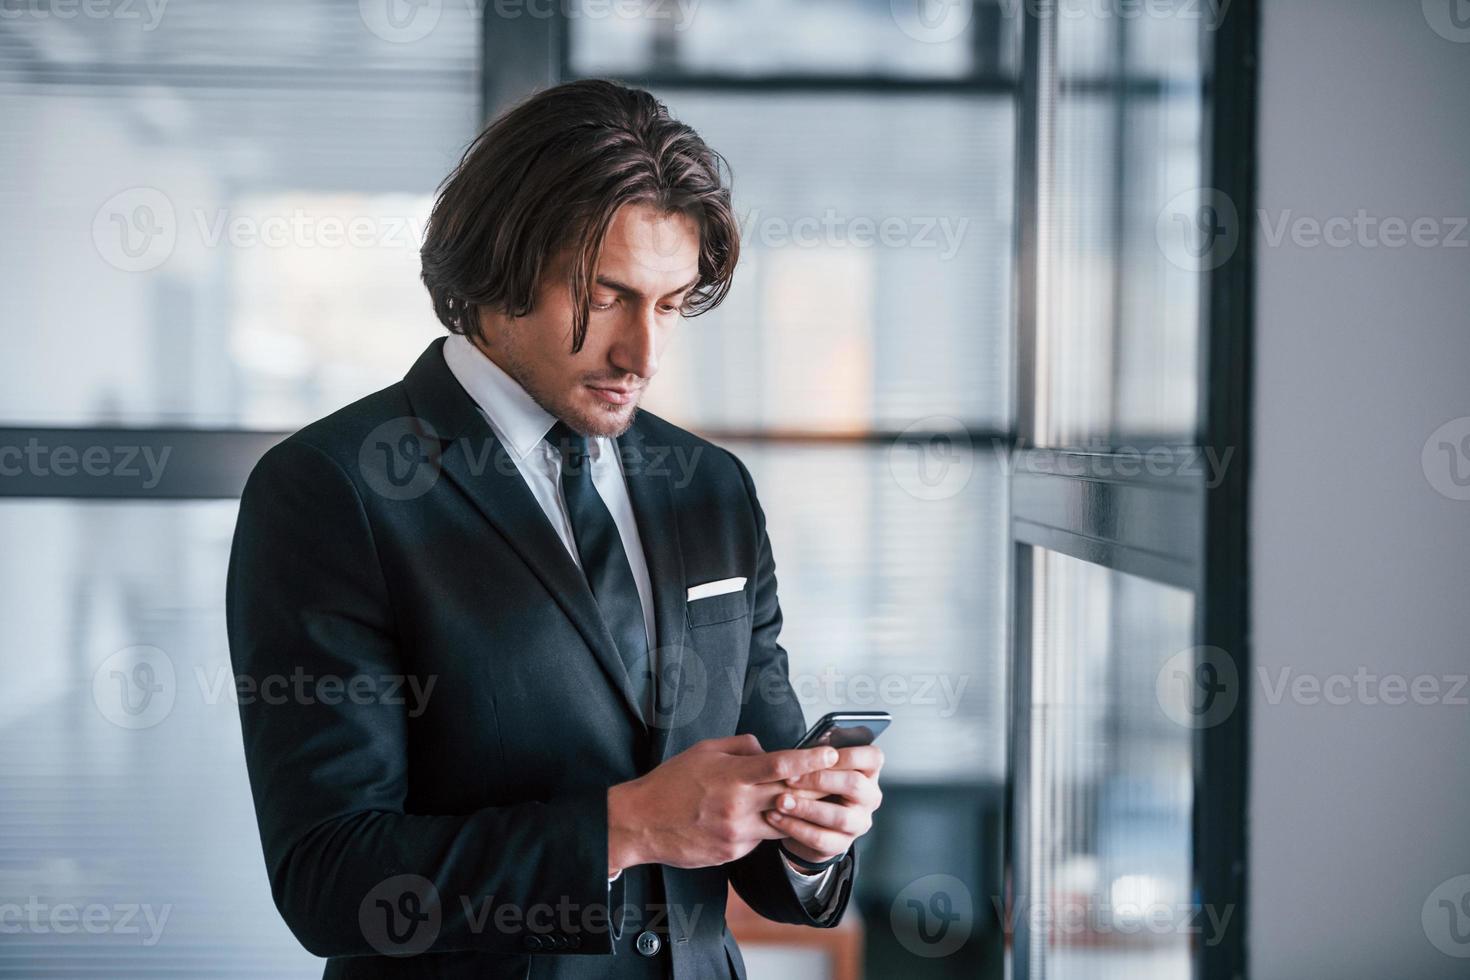 usando el teléfono retrato de un apuesto joven hombre de negocios con traje negro y corbata foto